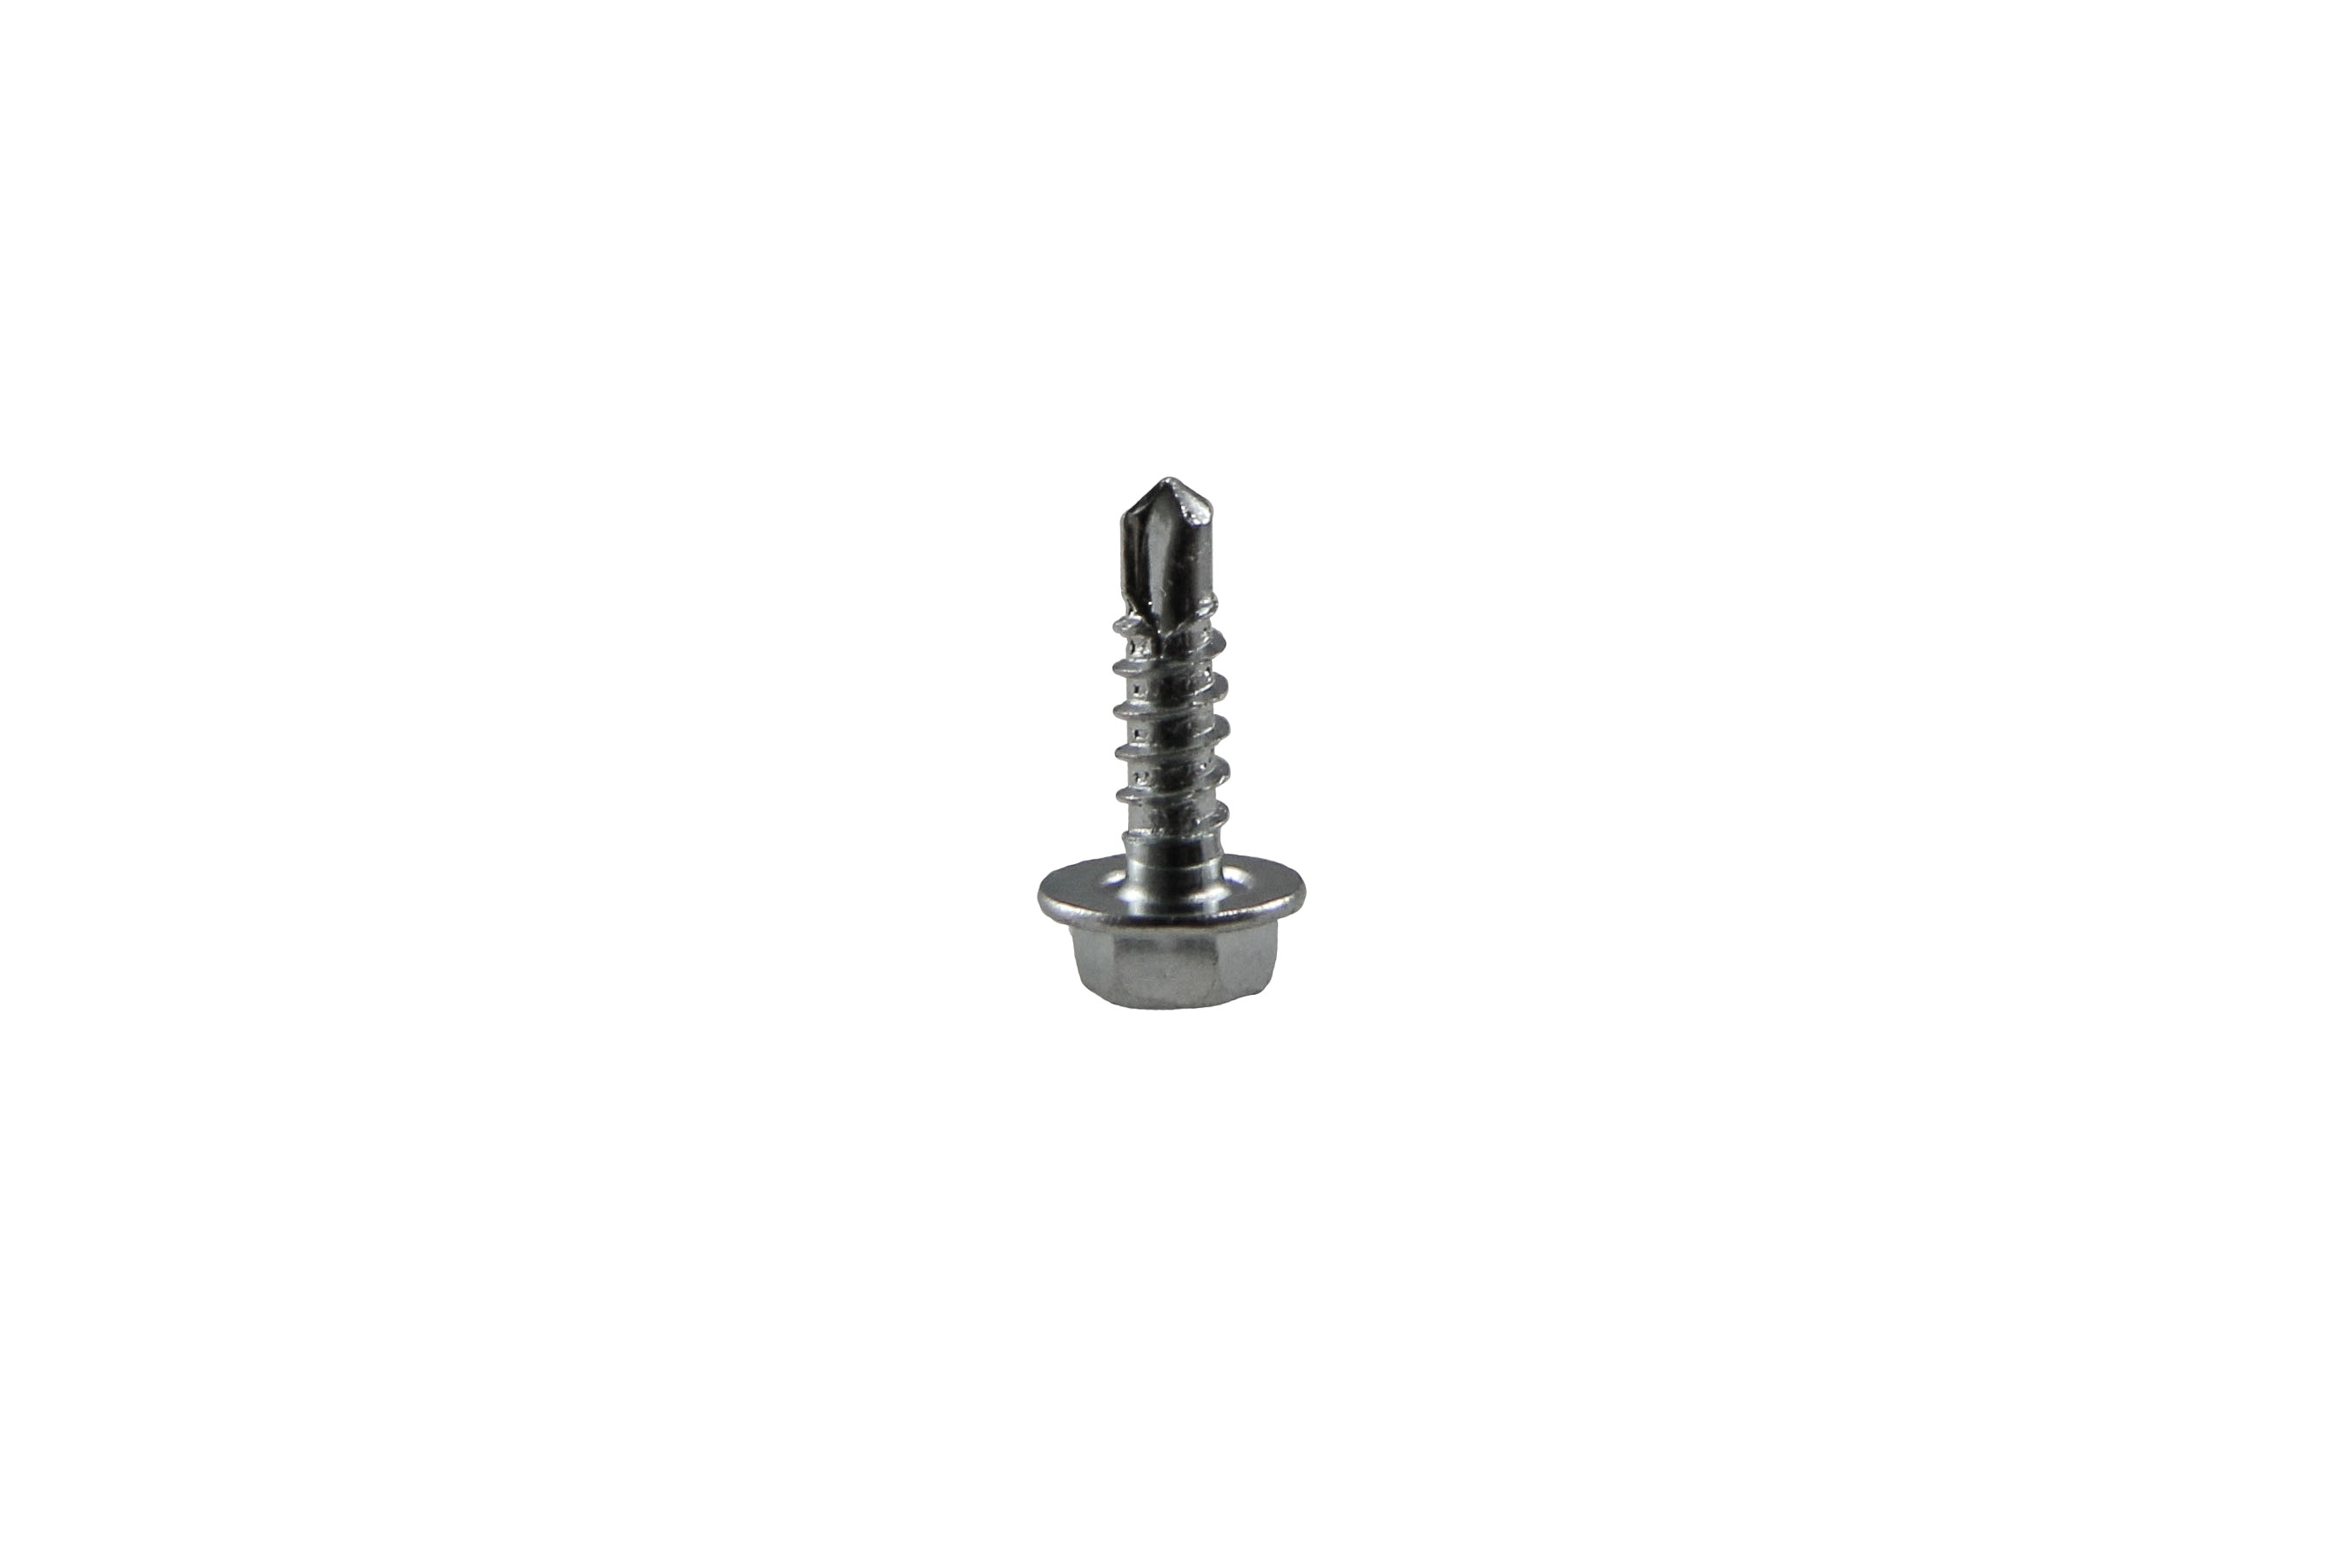 Drilling screw 3,5 x 19 mm